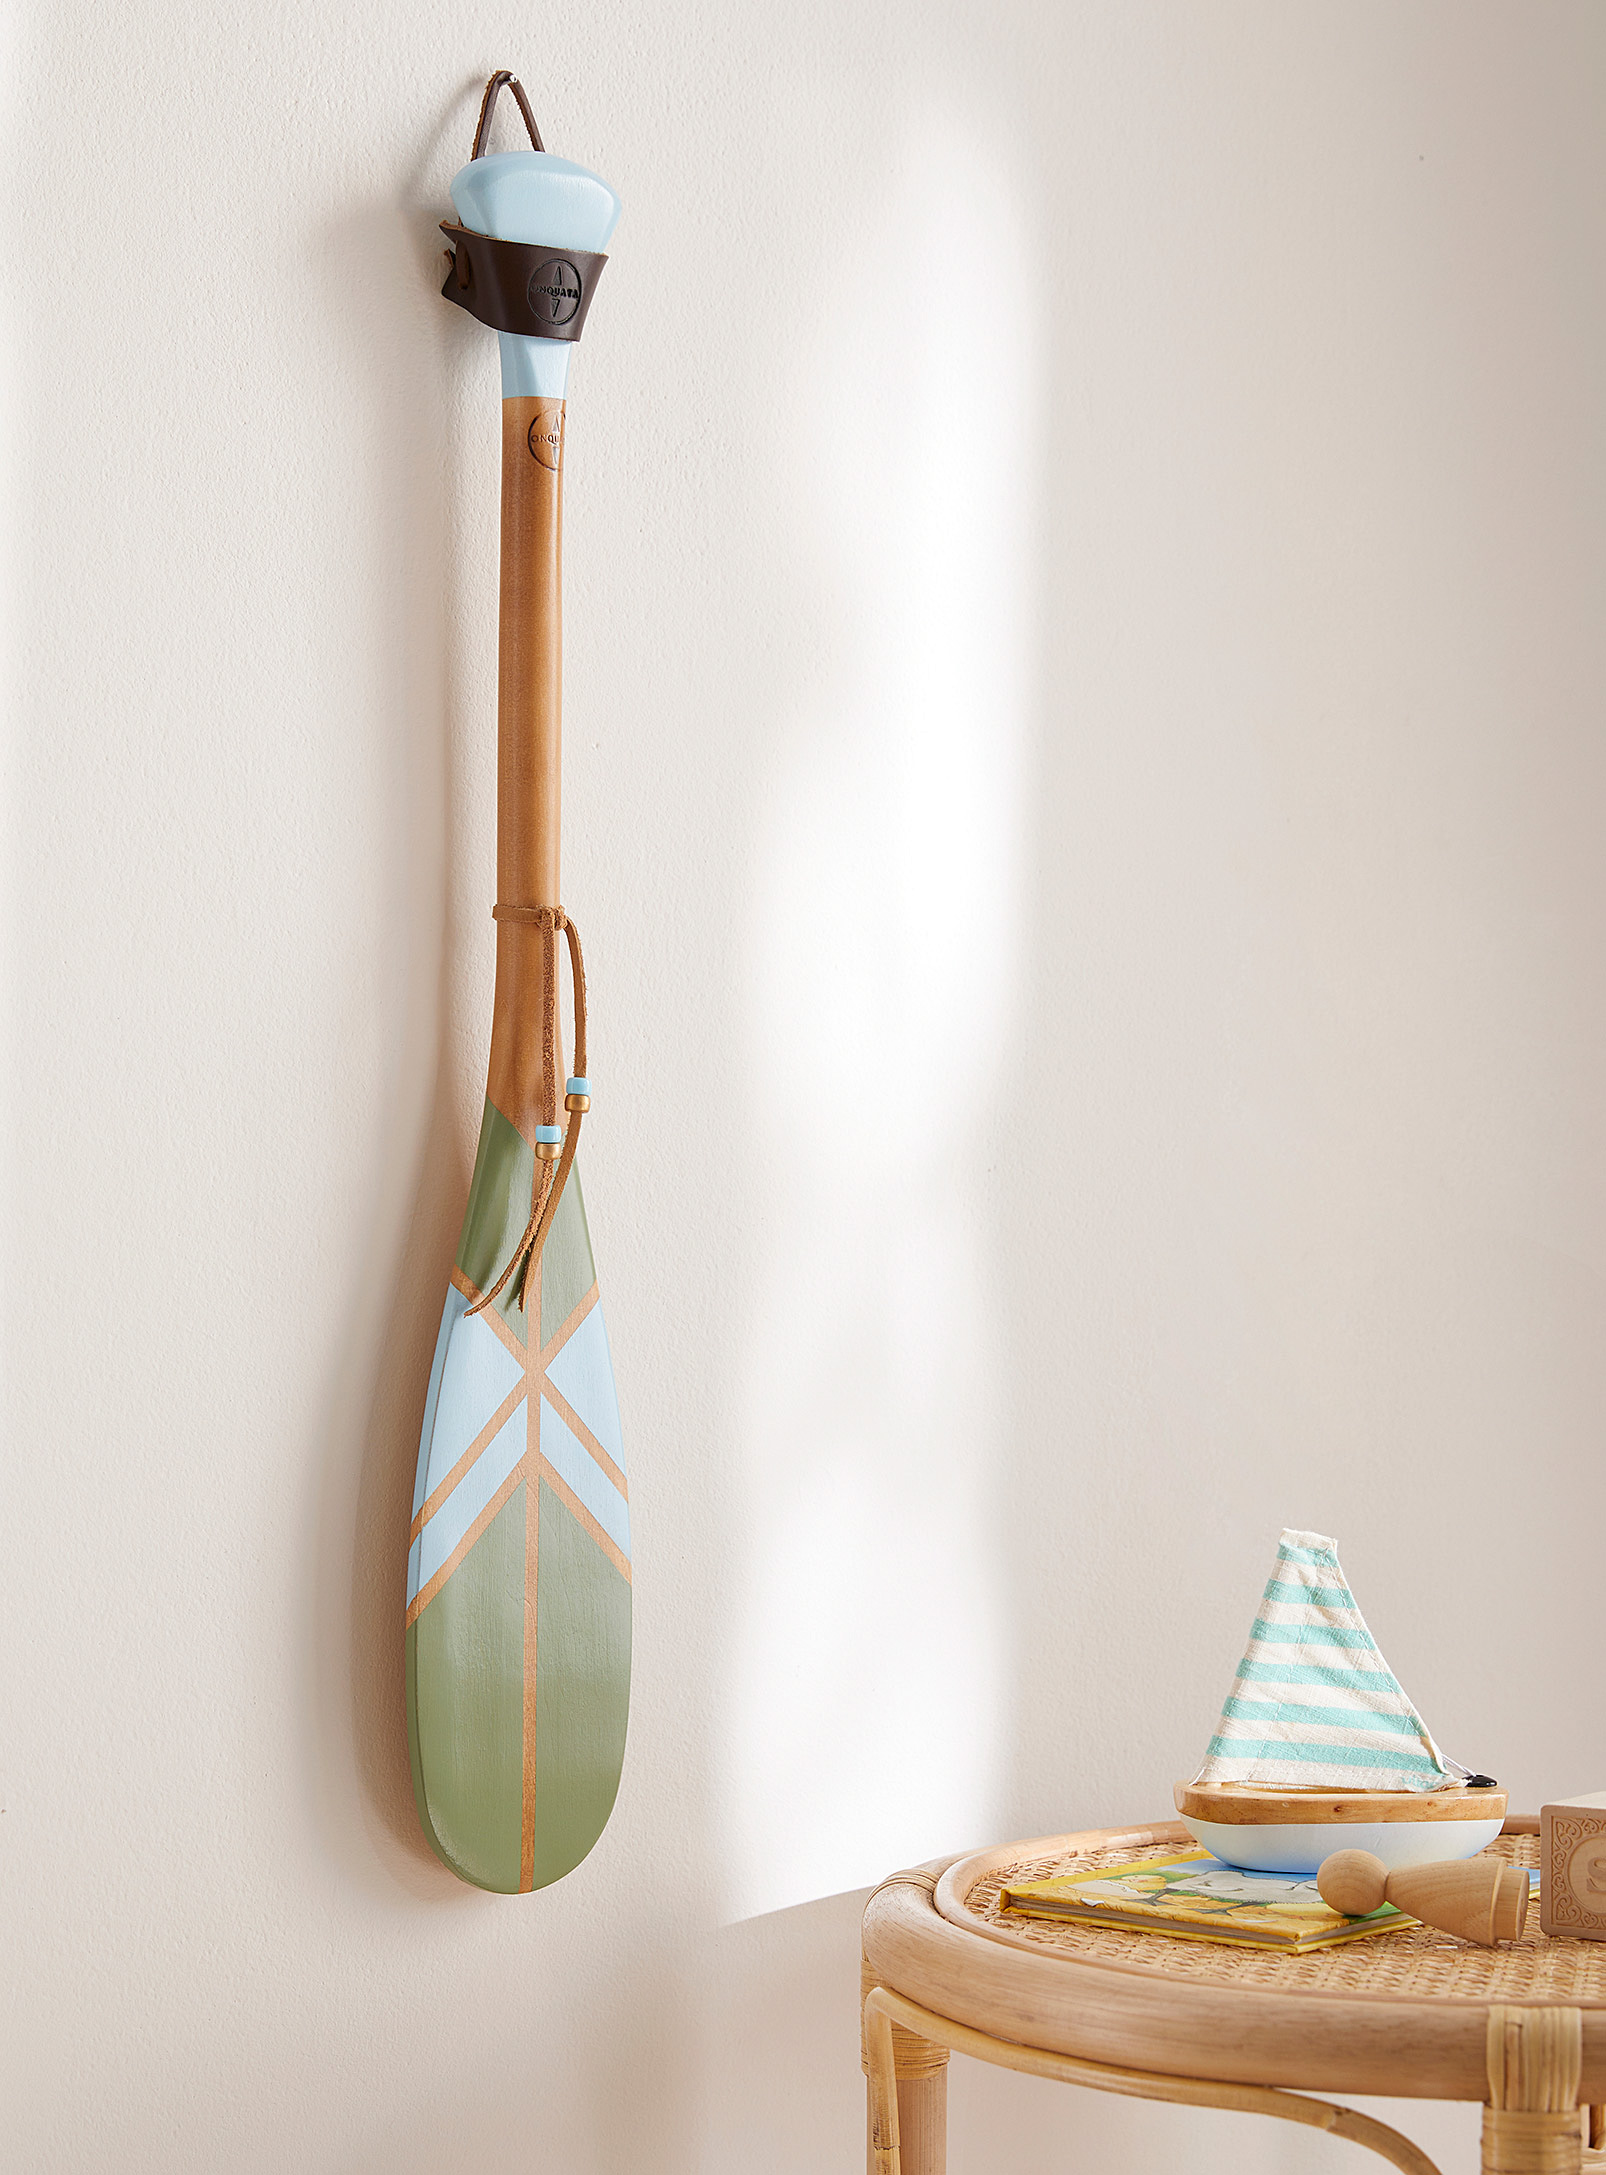 Onquata - Pacifique small decorative paddle